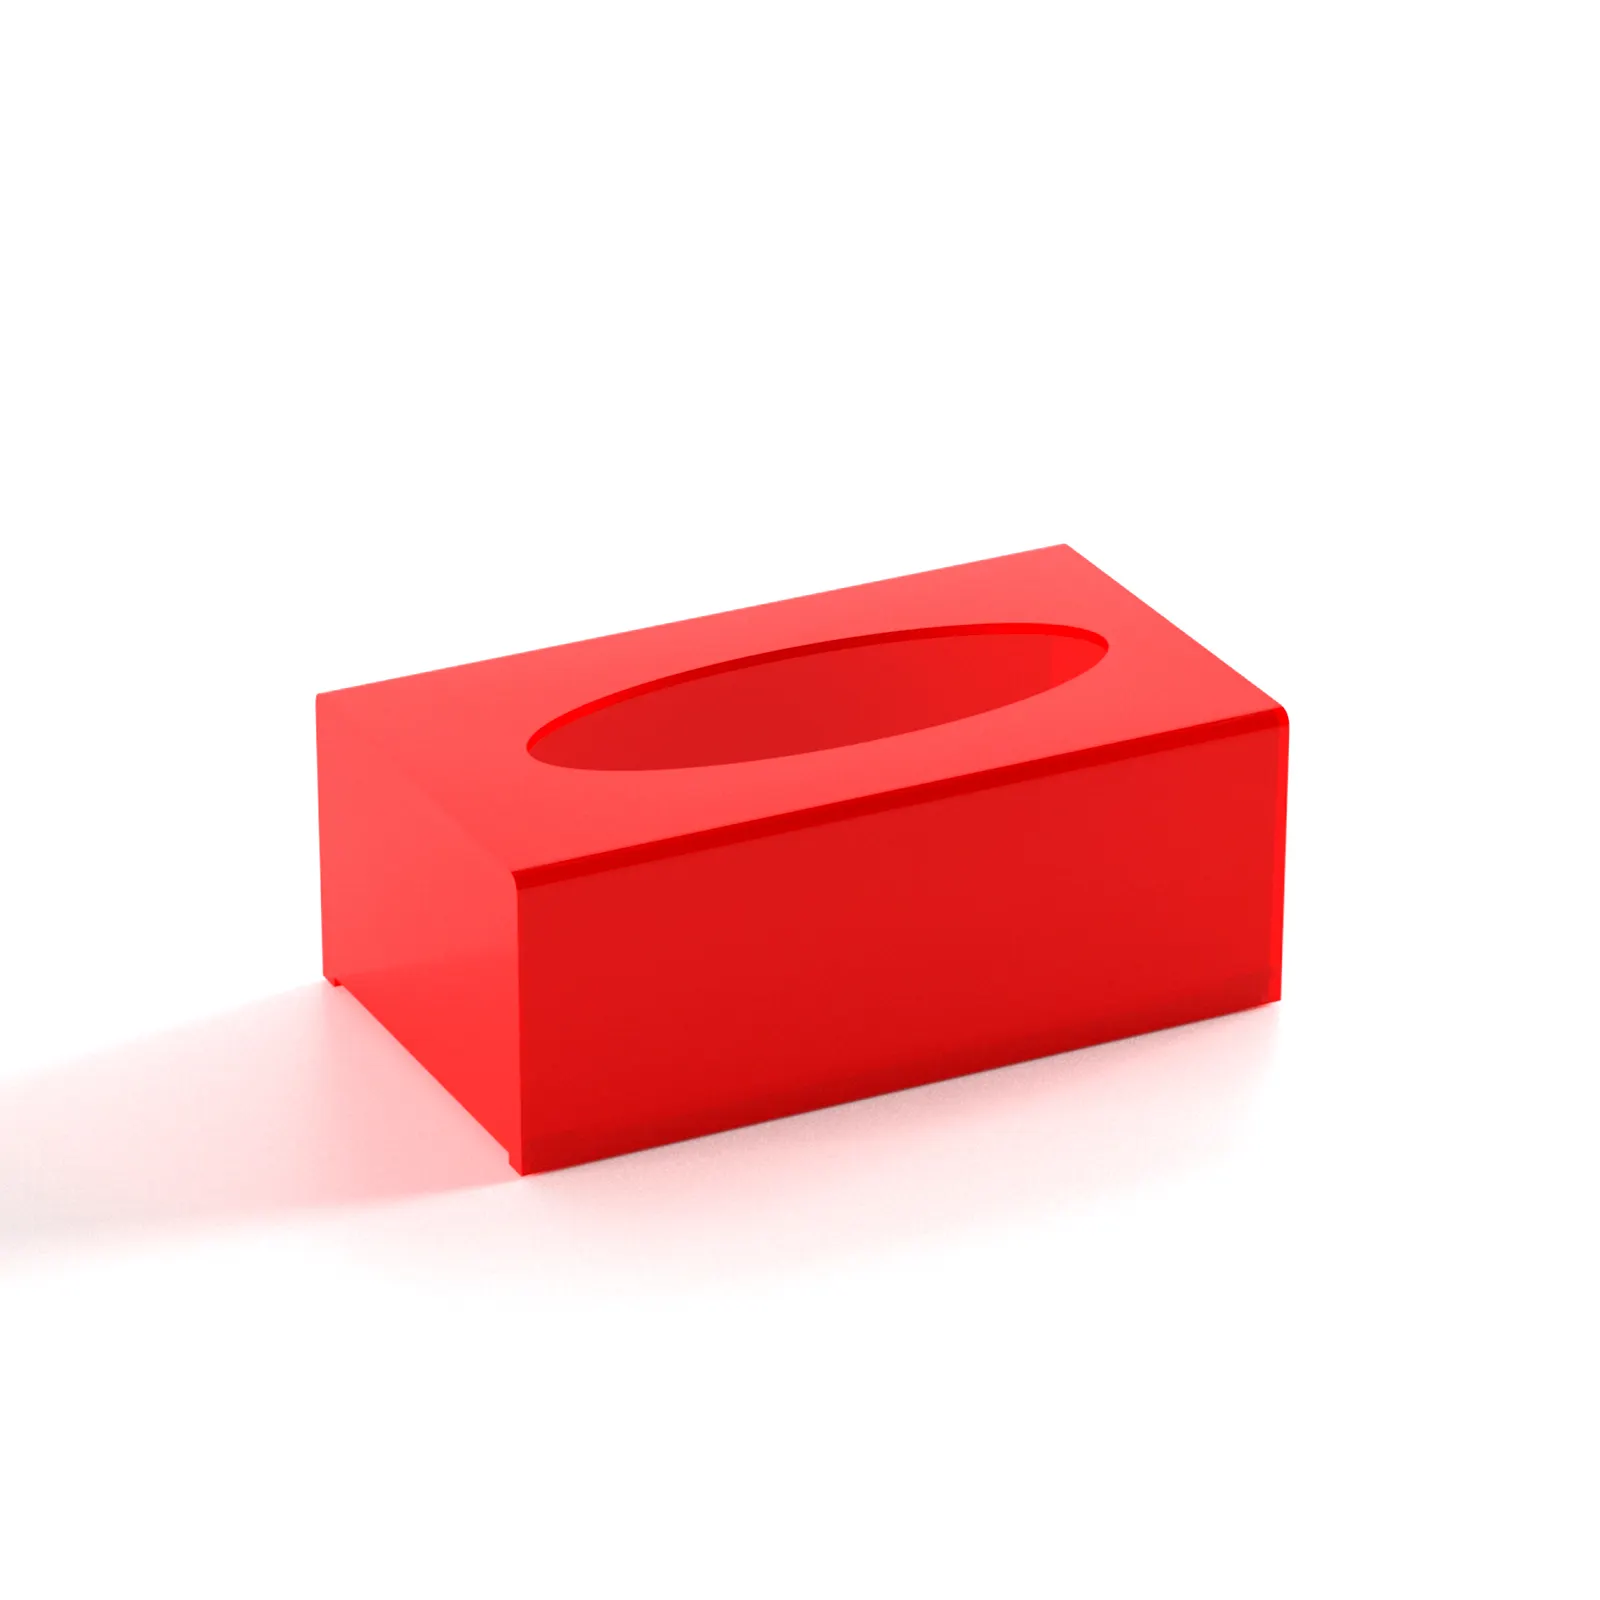 Custom OEM/ODM rosso acrilico rettangolo scatola del tessuto tovagliolo, acrilico tessuto facciale scatola Dispenser per controsoffitto, casa, ufficio, auto